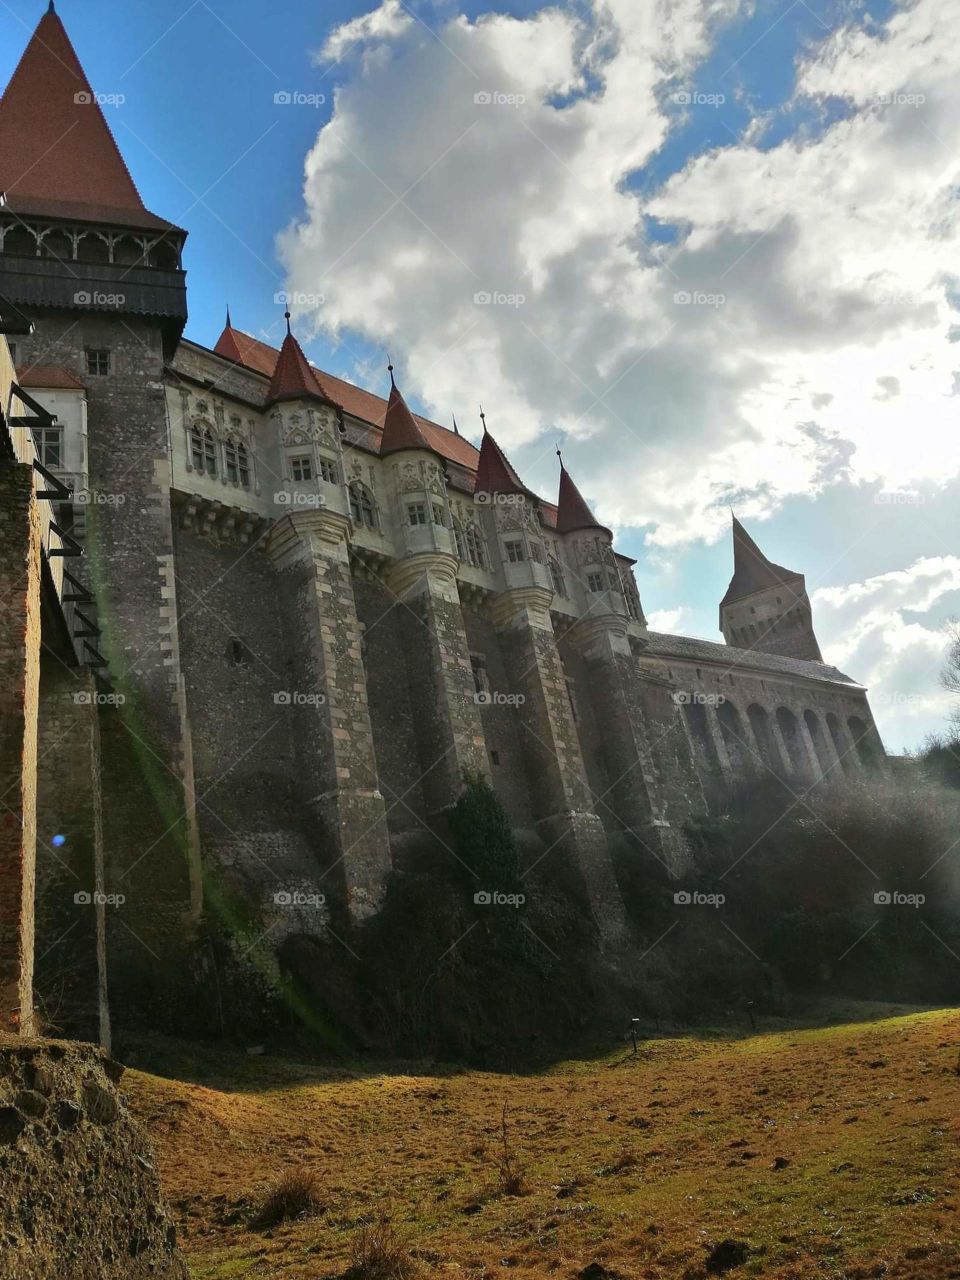 photos taken around the castle